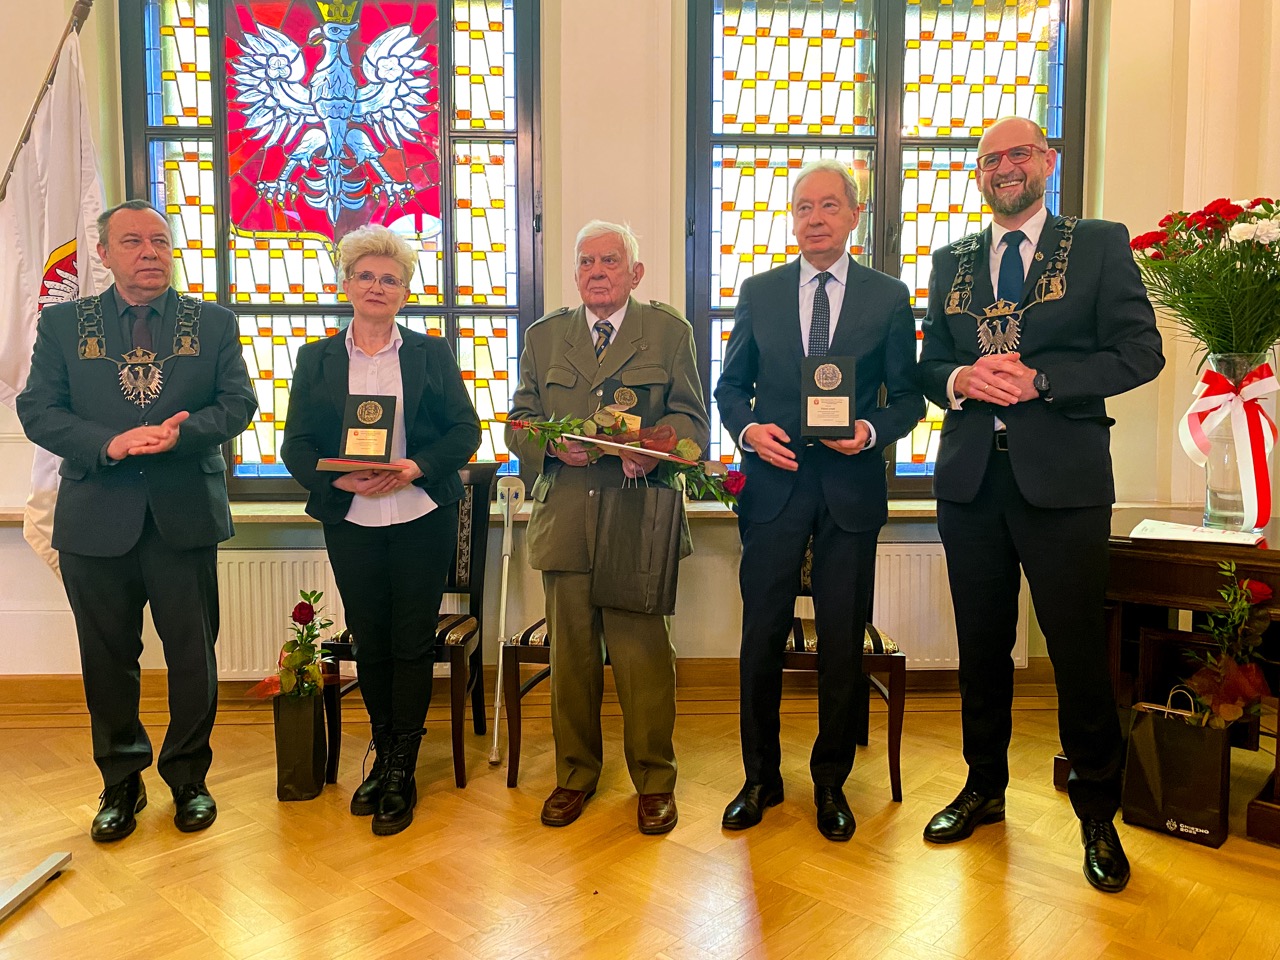 Od lewej przewodniczący M. Glejzer, E. Kozłowska, A. Sekulski, P. Arndt, prezydent T. Budasz